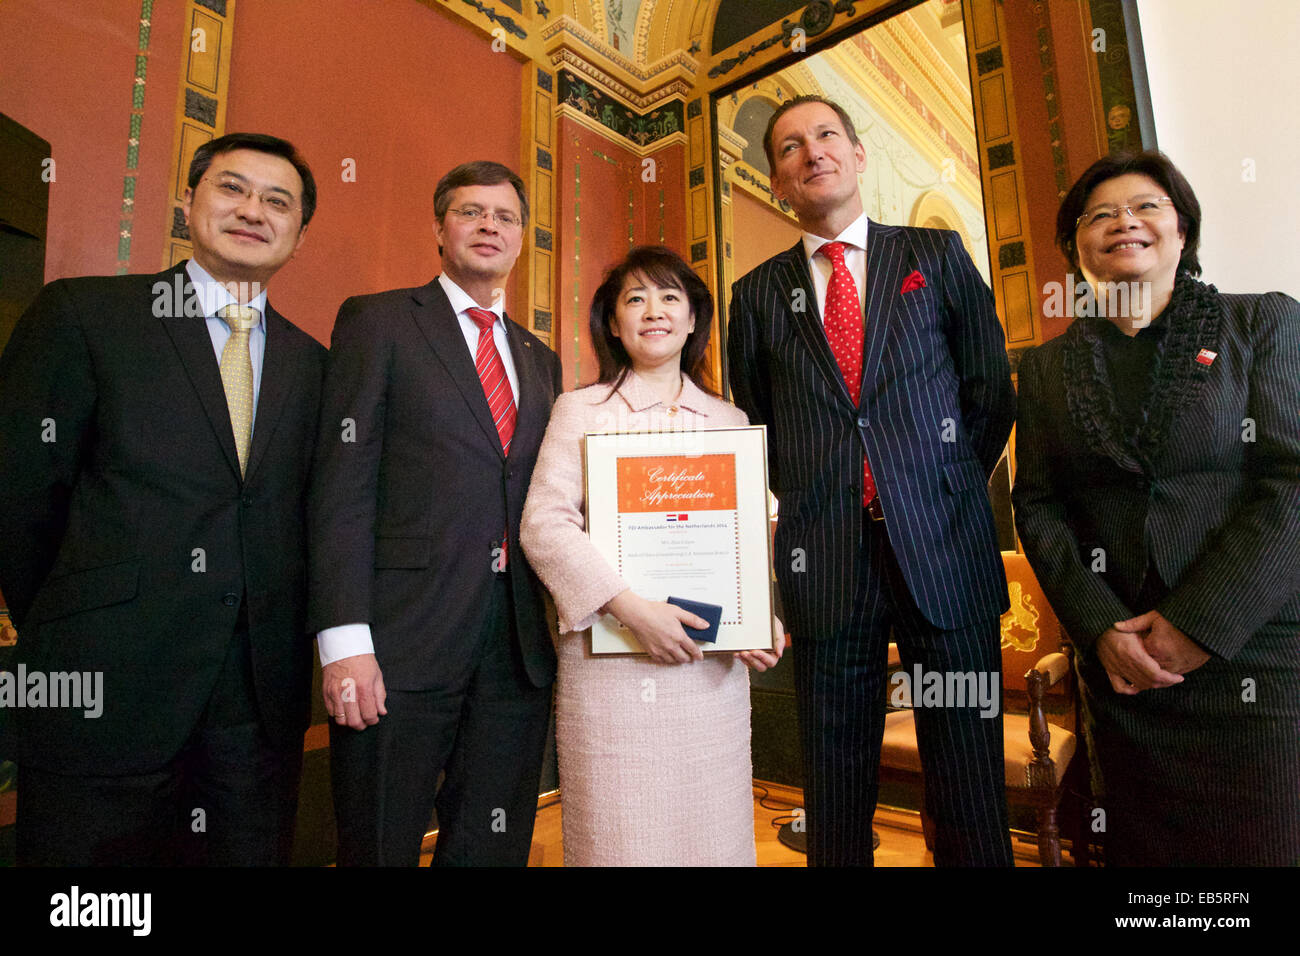 (141126)--UTRECHT, 26 November, 2014(Xinhua)--Zhao Caiyan(C), Land Leiter der Filiale in Rotterdam, Bank of China, posiert für ein Gruppenfoto mit Jeroen Nijland (2. R), Kommissar mit der der niederländischen nationalen ausländischen Investitionen Agentur (NFIA) und ehemaligen niederländischen Ministerpräsidenten Jan Peter Balkenende(2nd L) am 7. Sino-niederländischen ökonomischen Seminar in Utrecht, die Niederlande, am 26. November 2014. Die niederländische Regierung gab eine Auszeichnung, der Rotterdam-Niederlassung der Bank of China am Mittwoch für seine Beiträge zur Förderung von Handel und wirtschaftliche Zusammenarbeit zwischen China und den Niederlanden. (Xinhua/Sylvia Lederer) Stockfoto